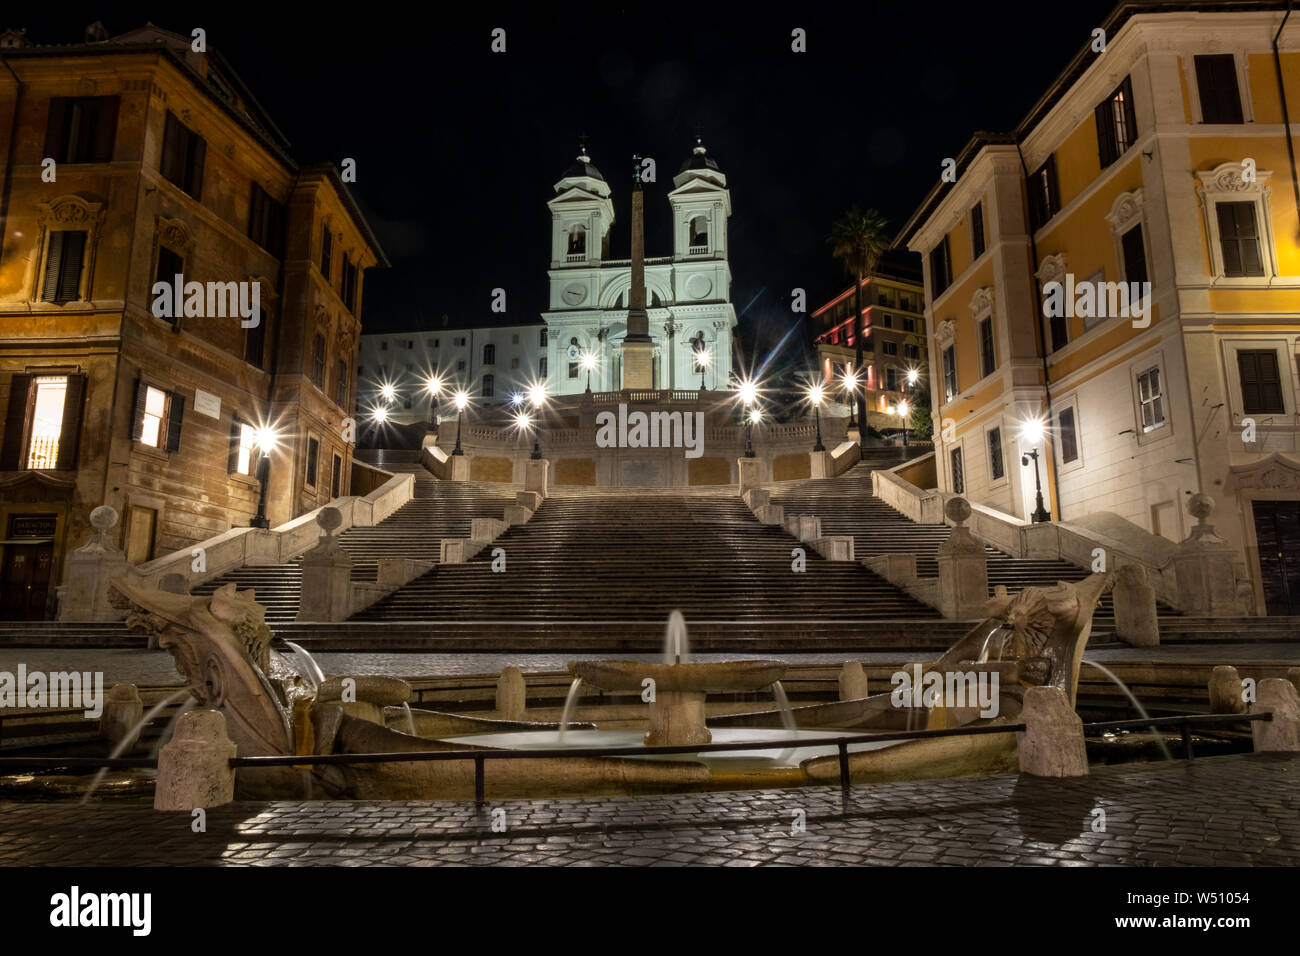 Spanish Steps Rome, Italy. Includes Fontana della Barcaccia and Santissima Trinita dei Monti. Shot at night with no people Stock Photo